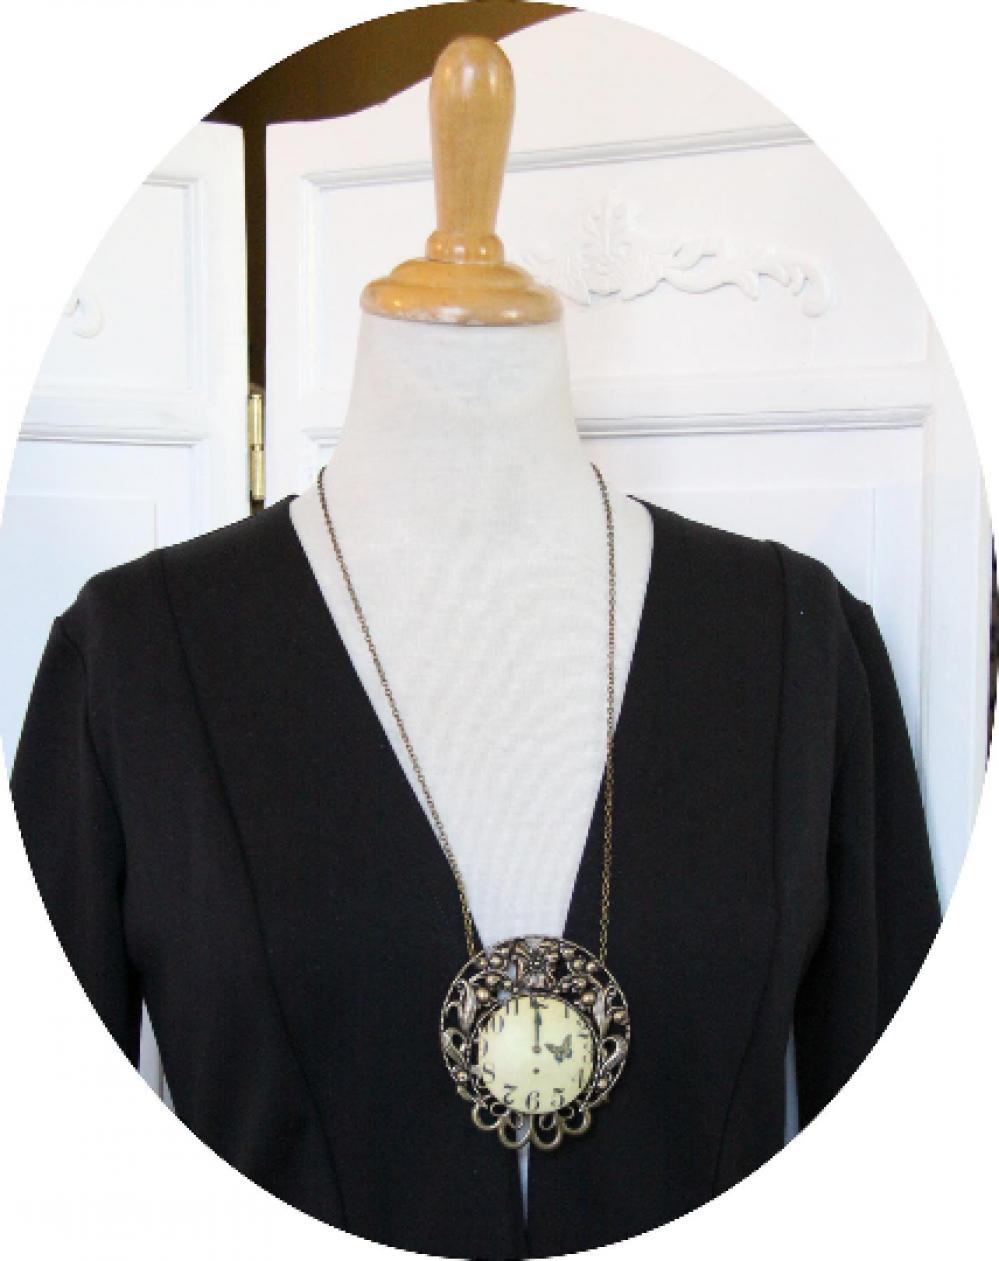 Collier sautoir médaillon de style victorien bronze et sépia avec un bouton en tissu horloge et une estampe en croissant de lune style Mucha--9995581230834